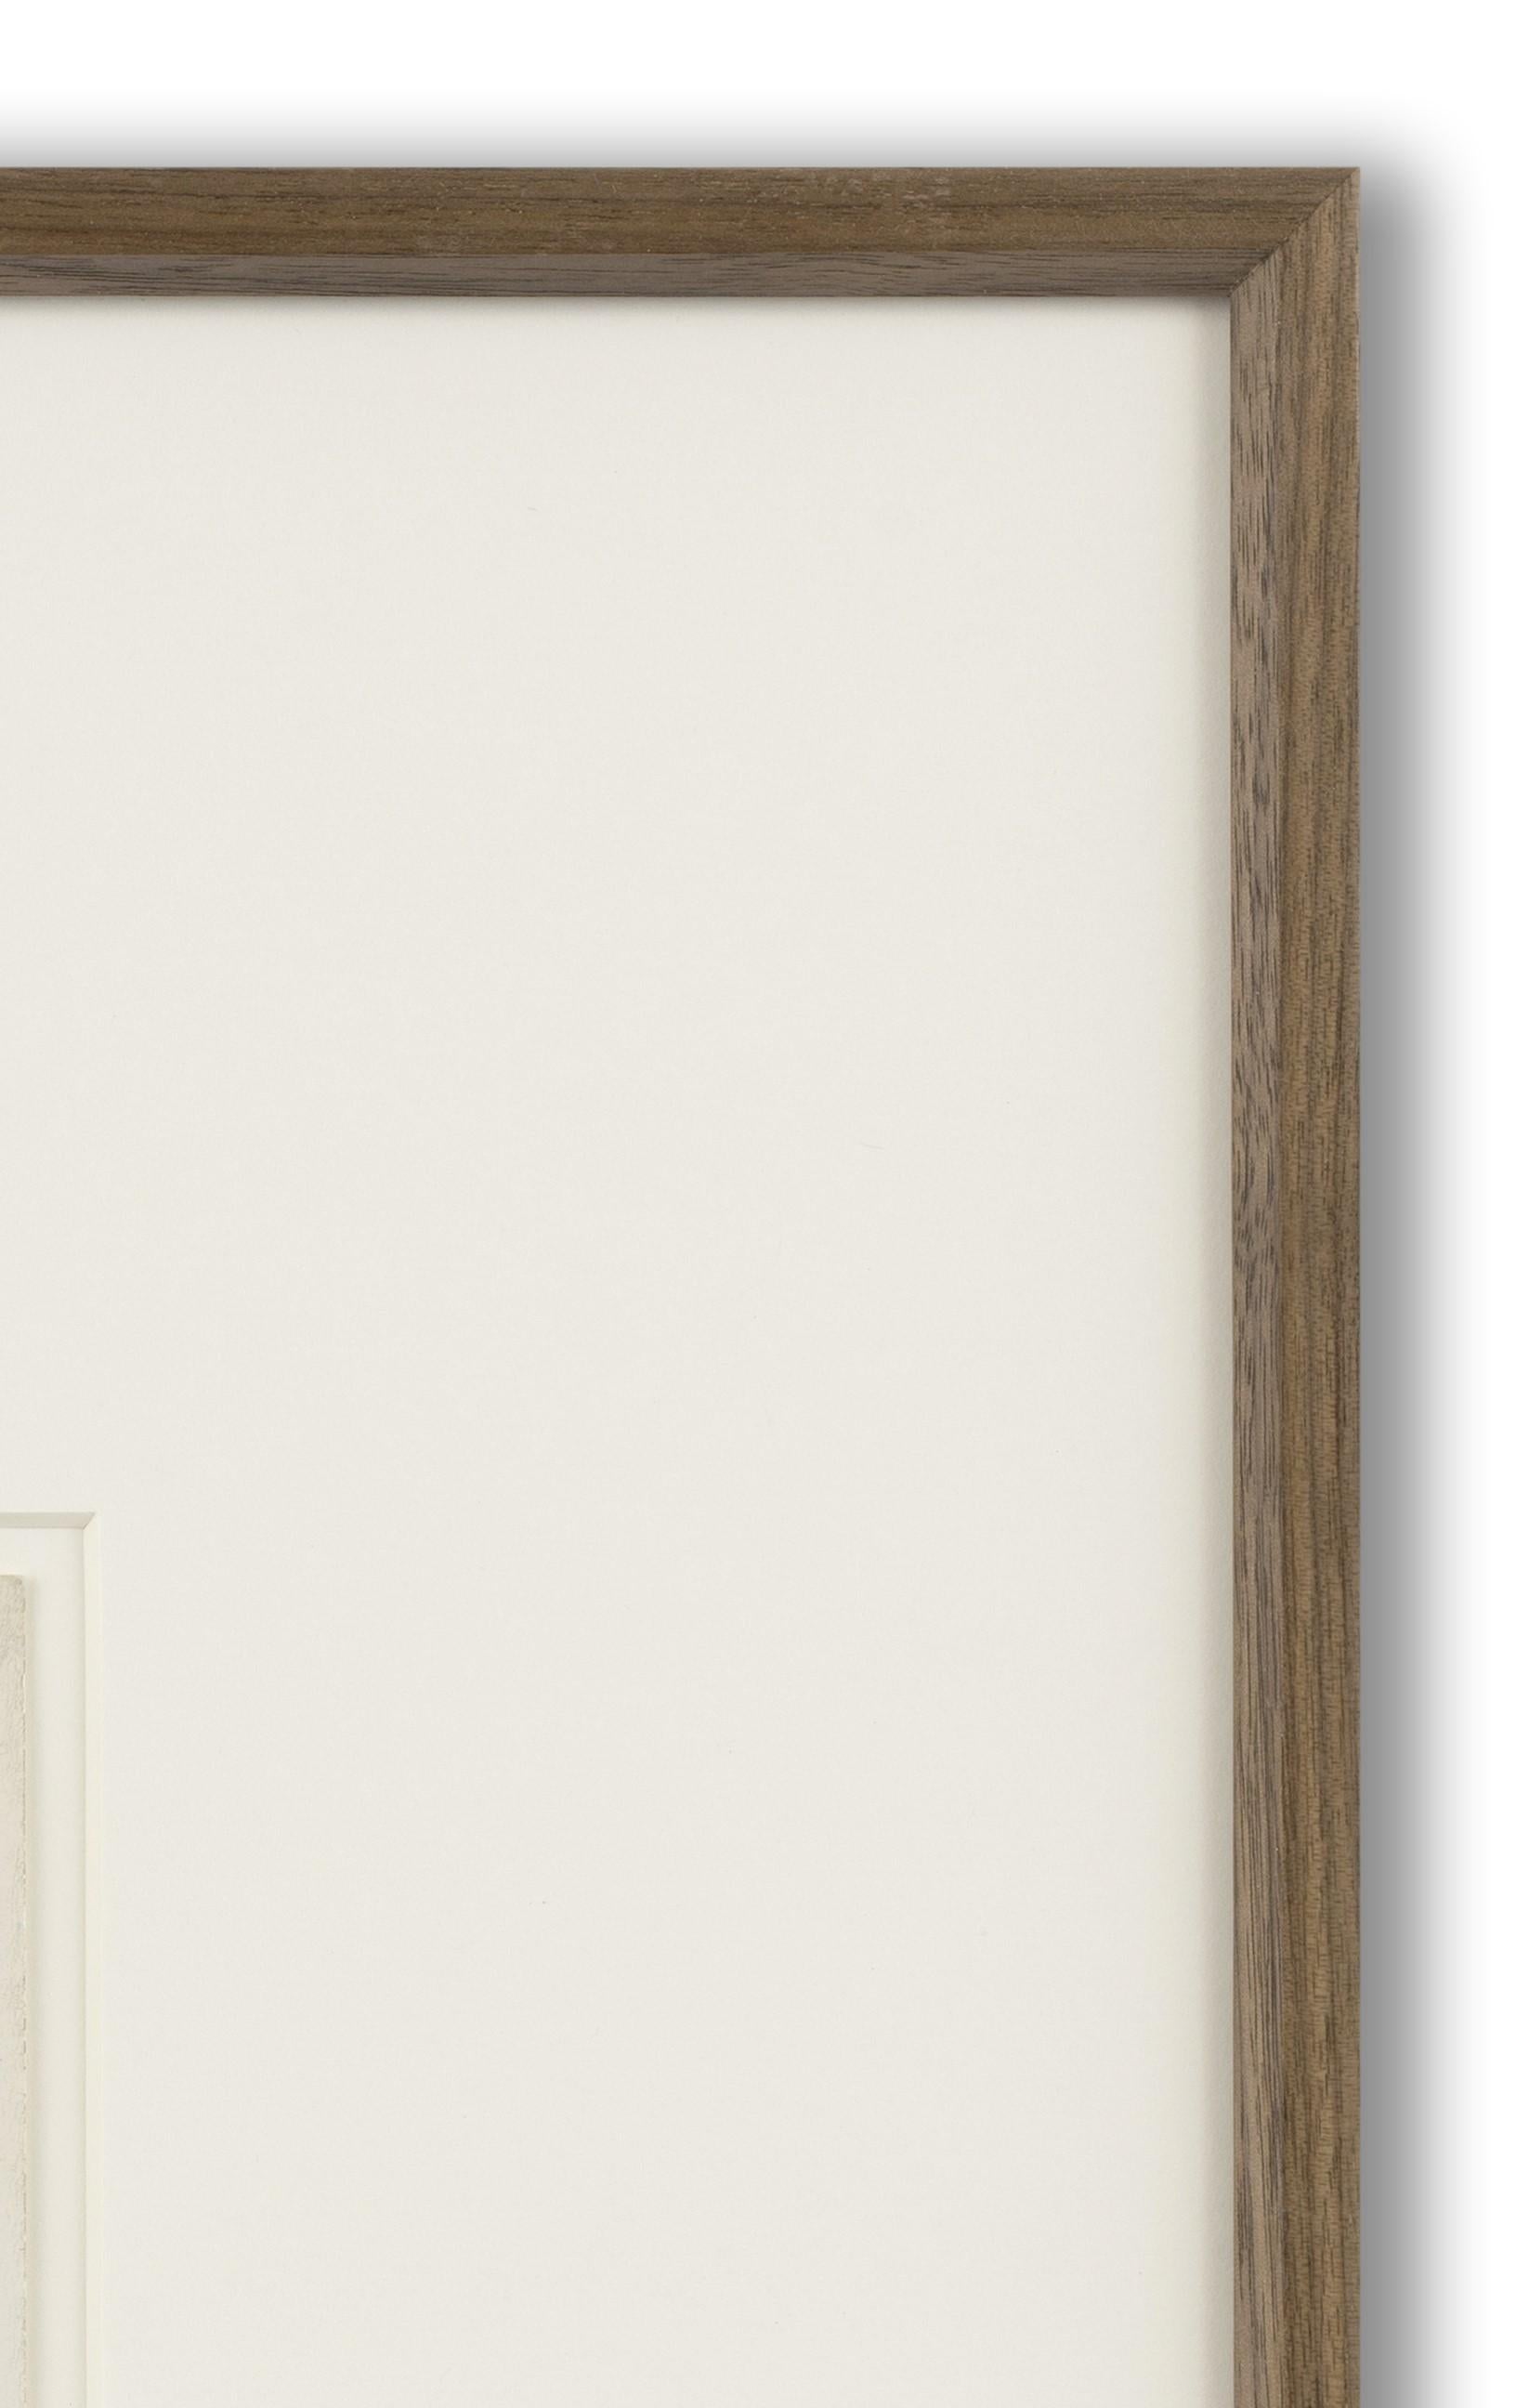 Silbergelatineabzug, mit numerischem Vermerk und Stempel der Collection'S von Jon Anderson (verso), 12cm x 18cm (41cm x 44cm gerahmt). Jon Anderson war 35 Jahre lang der Partner von Paul Cadmus. 

Das Bild zeigt die Künstler Paul Cadmus und George